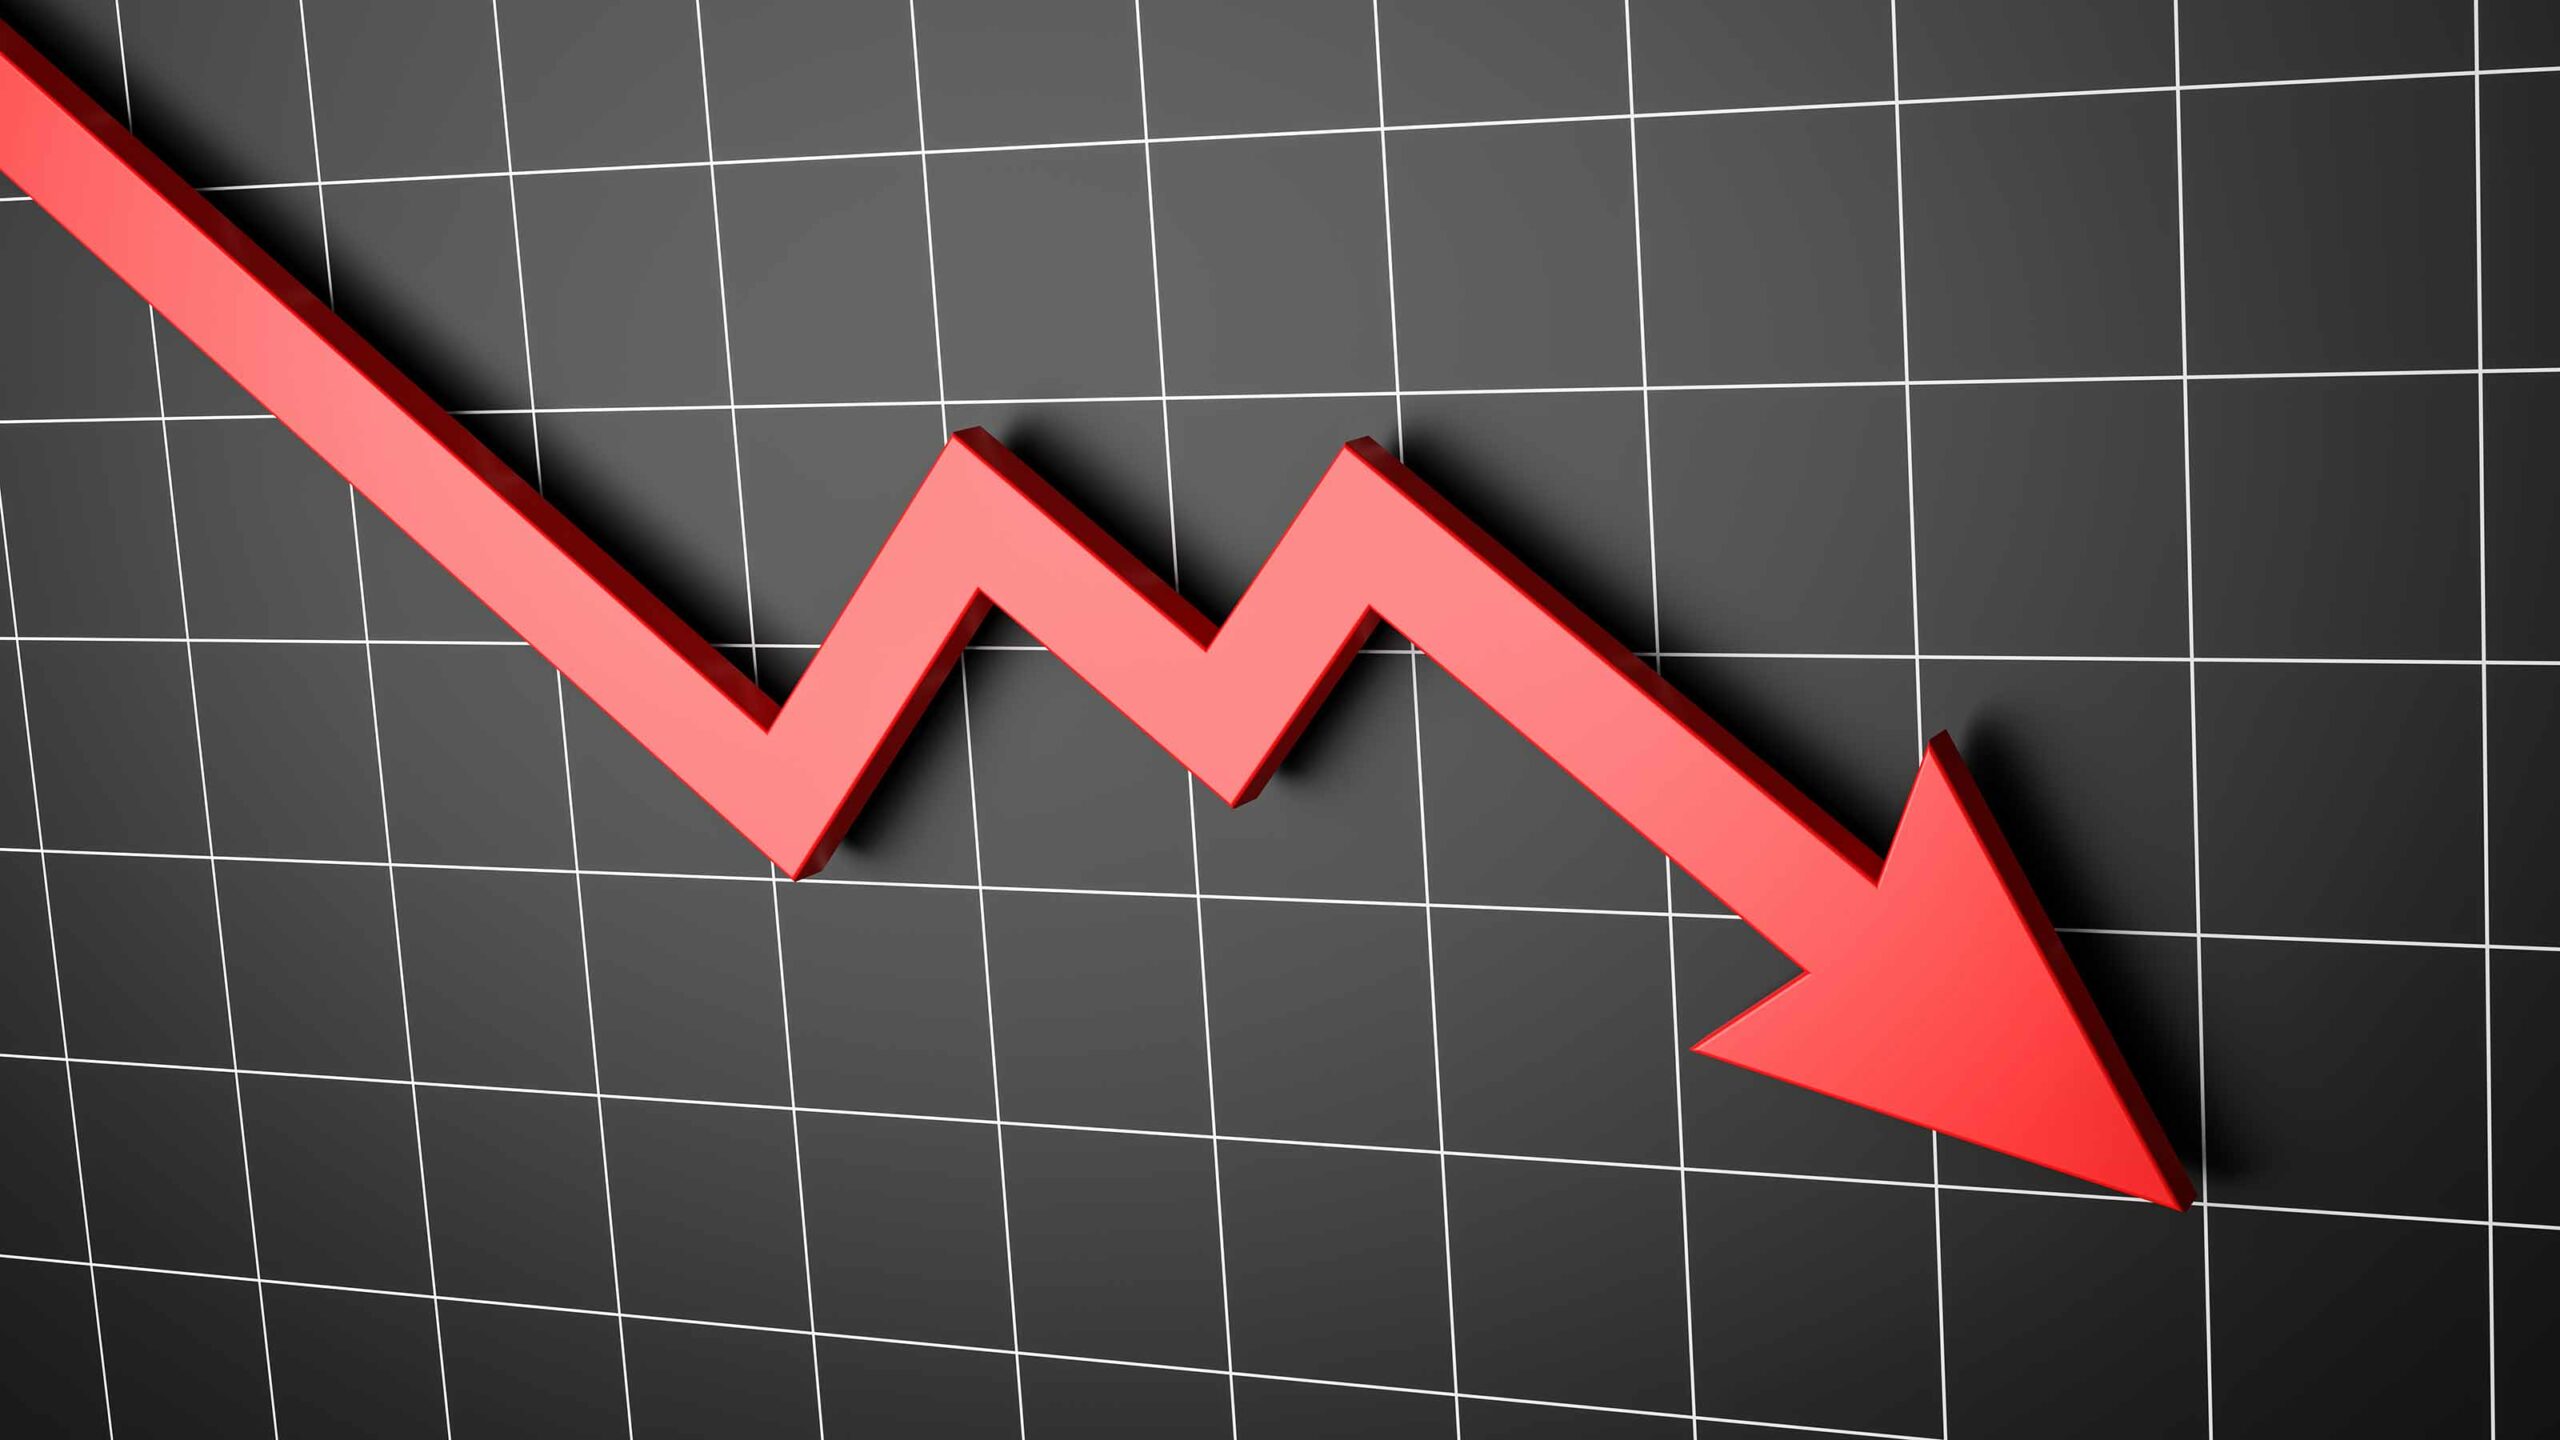 KAVA sucumbe a la tendencia bajista del mercado, pierde un 11% en el último día